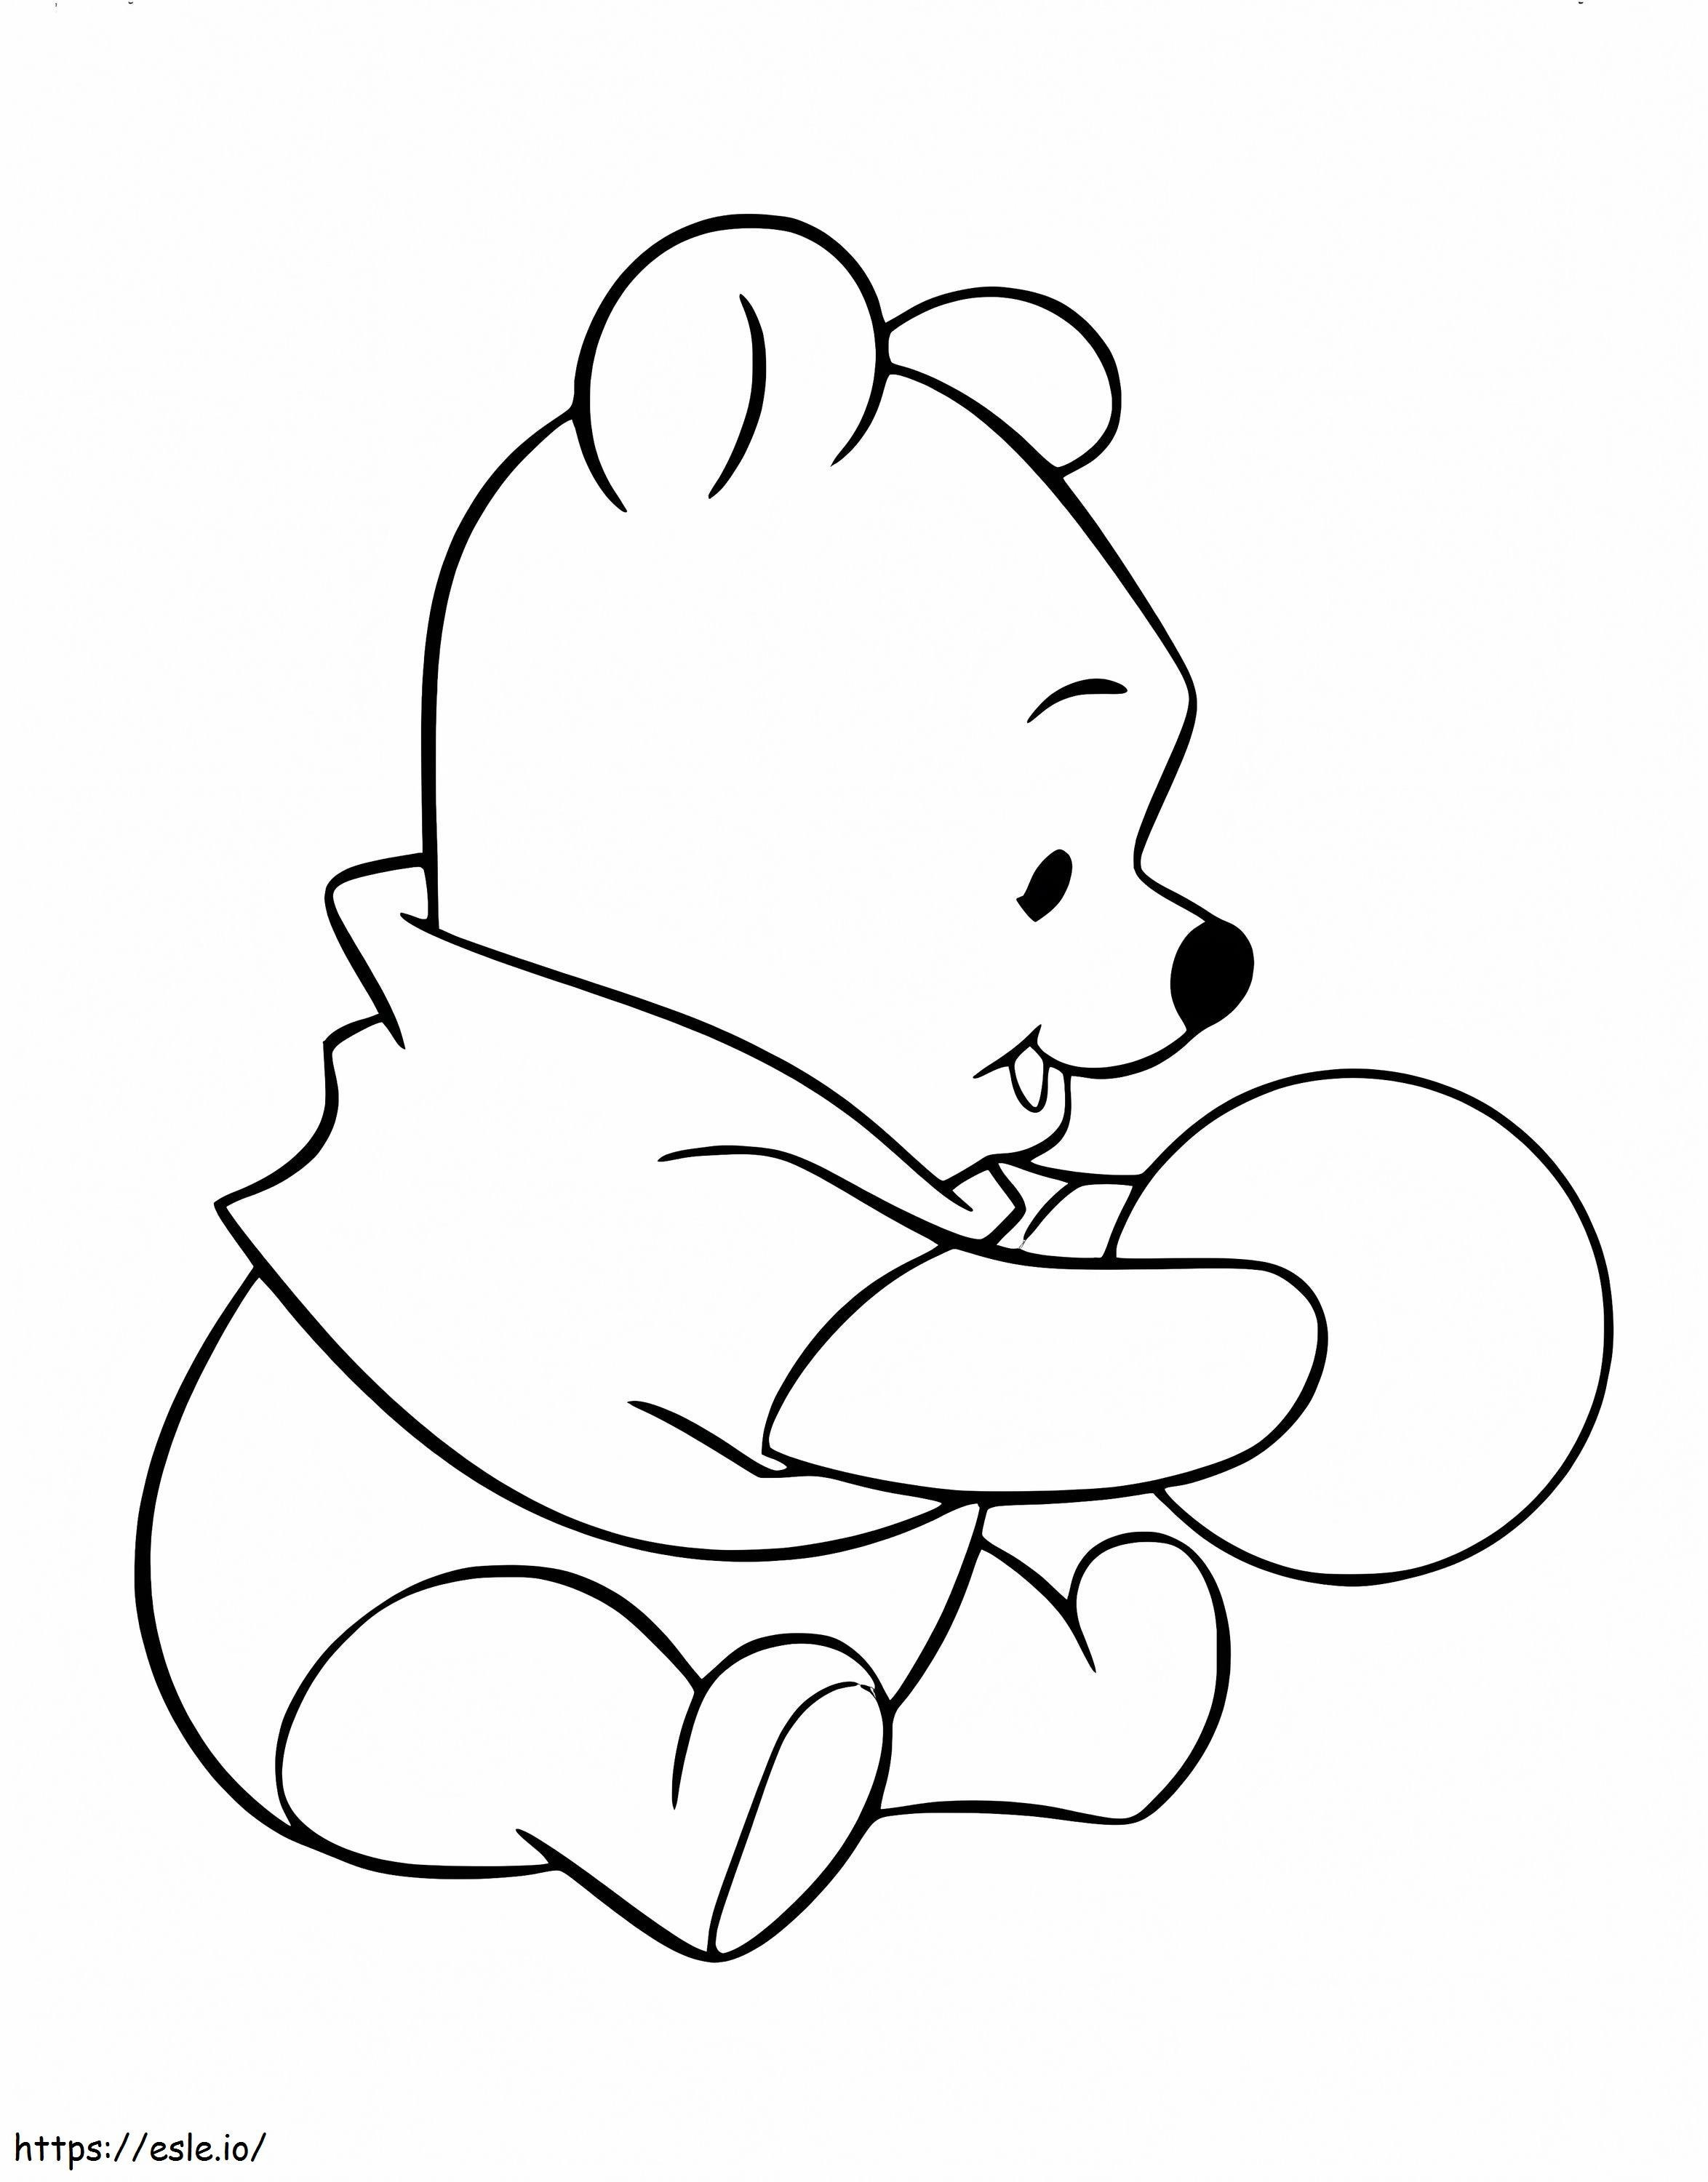 Coloriage Bébé Winnie l'ourson avec ballon à imprimer dessin